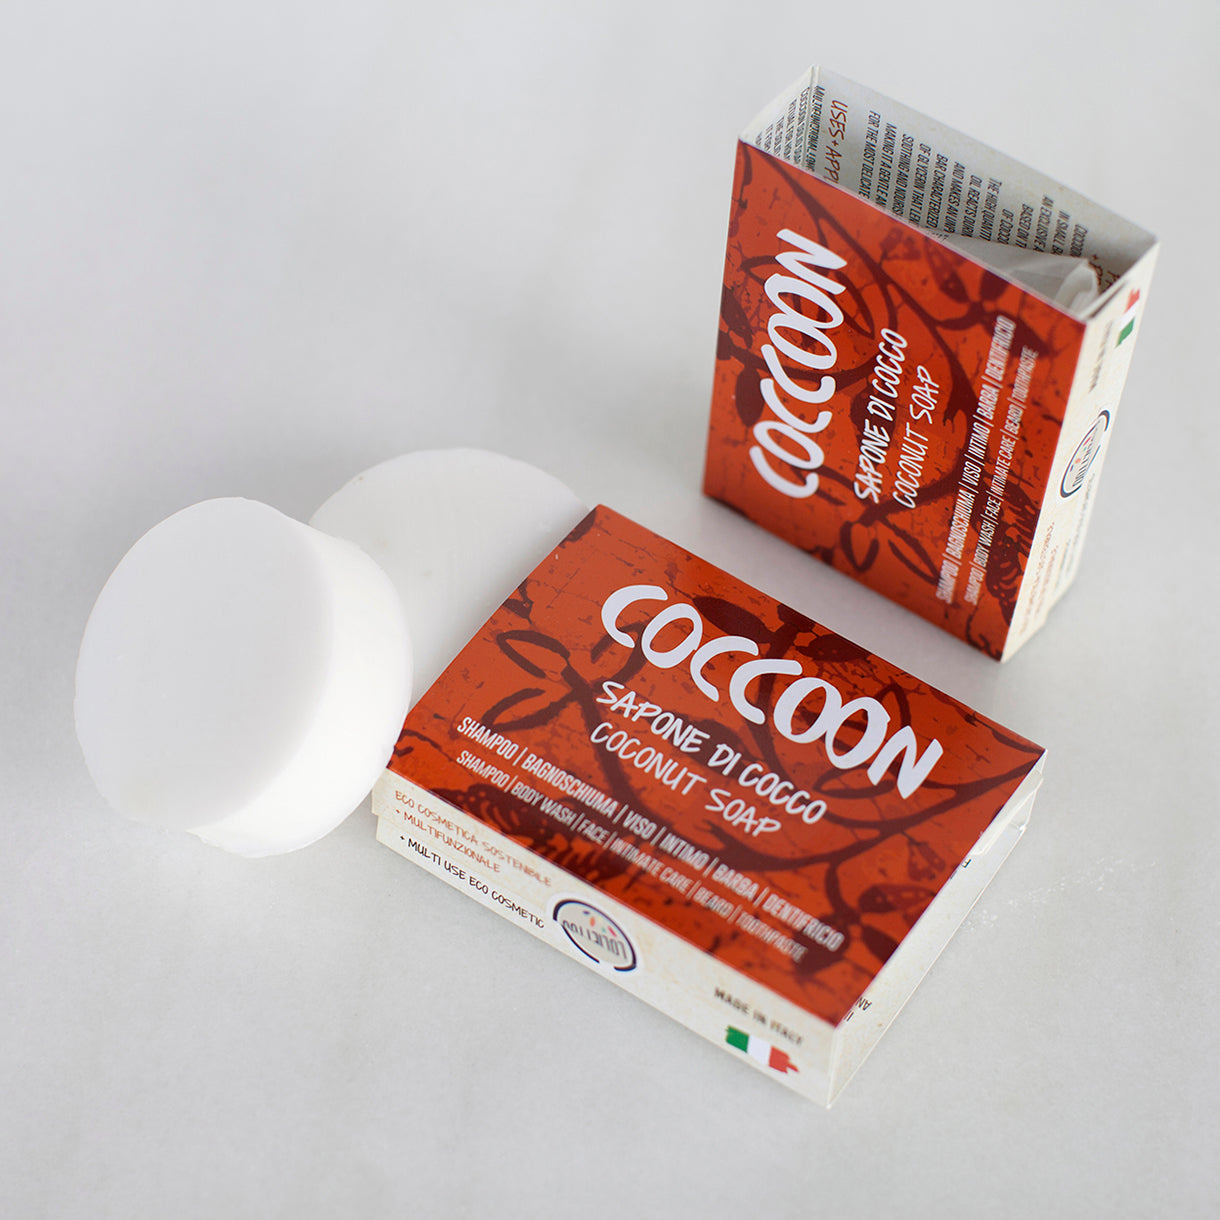 Confezioni di sapone solido Coccoon con panetti nudi